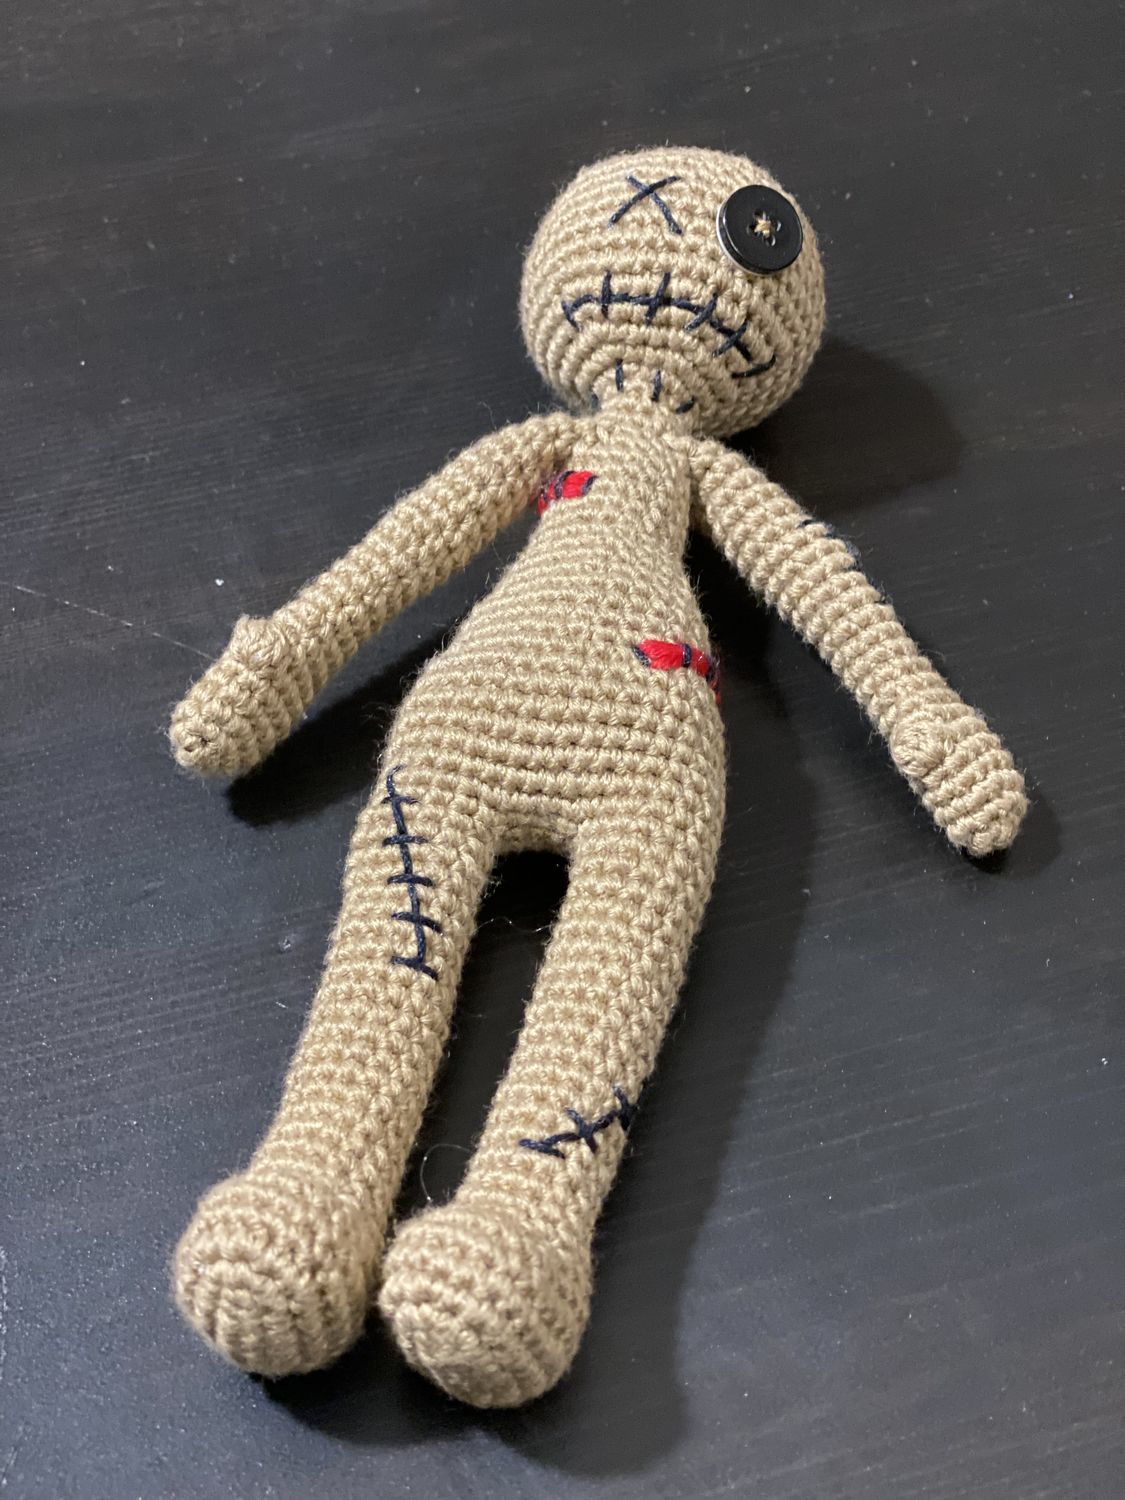 Нашли куклу вуду. Кукла вуду крючком. Как сделать куклу вуду из бумаги. Как сделать куклу вуду из пластилина. Кукла вуду схема вязания крючком.